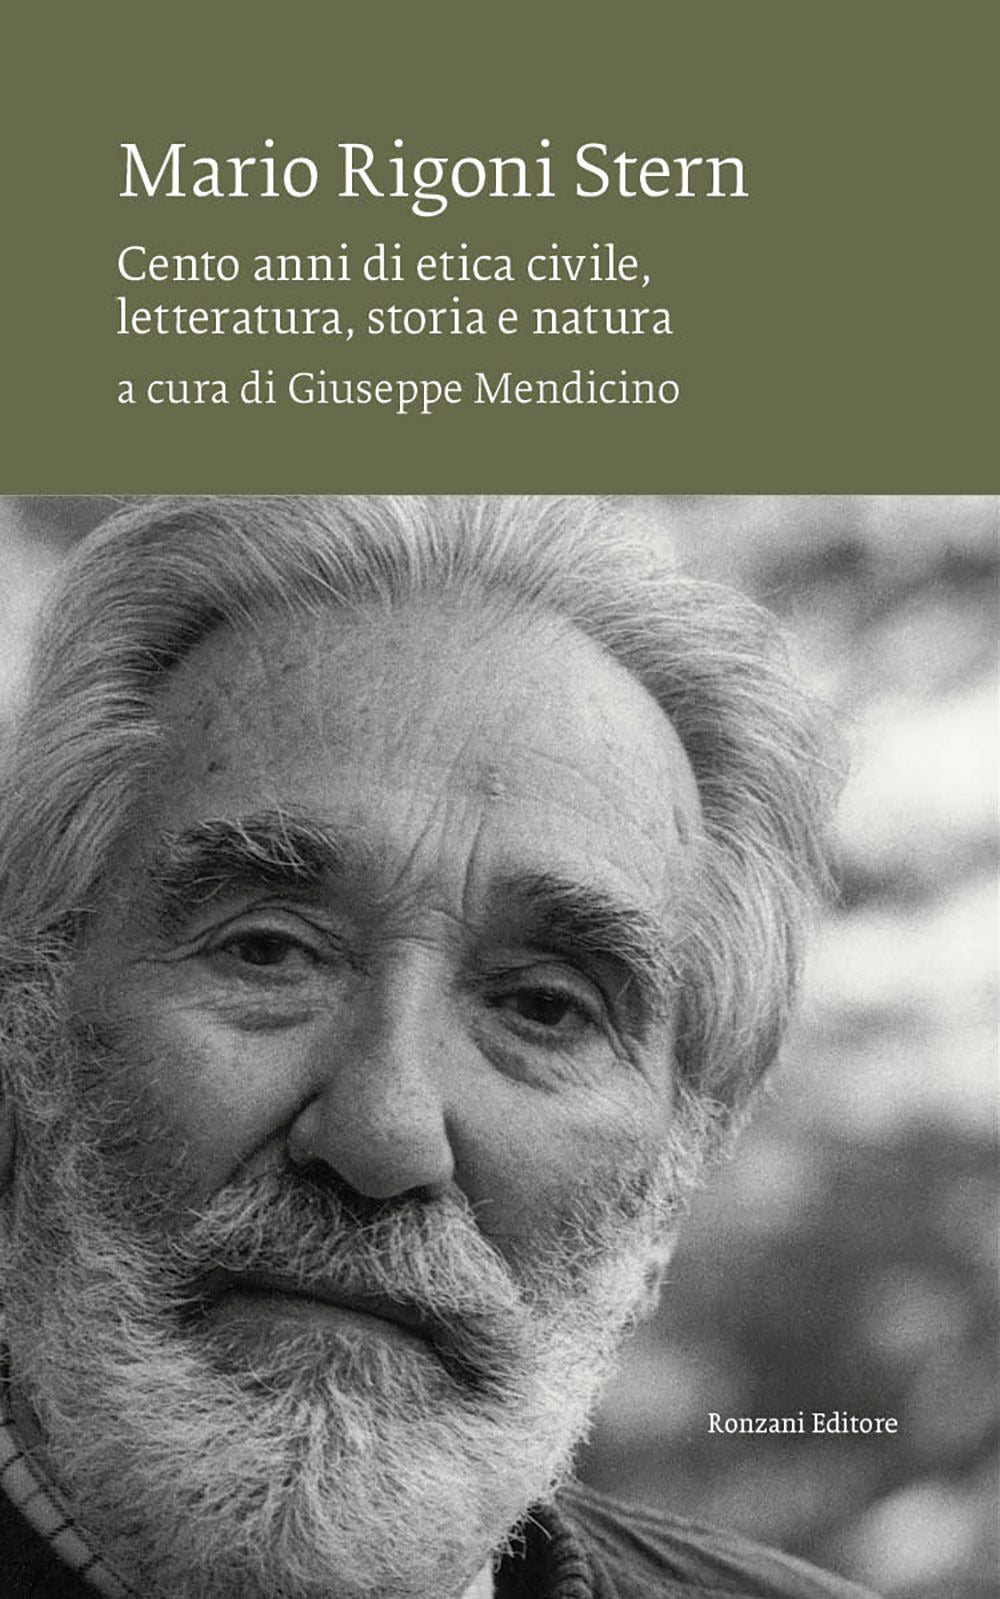 Mario Rigoni Stern. Cento anni di etica civile, letteratura, storia e natura.